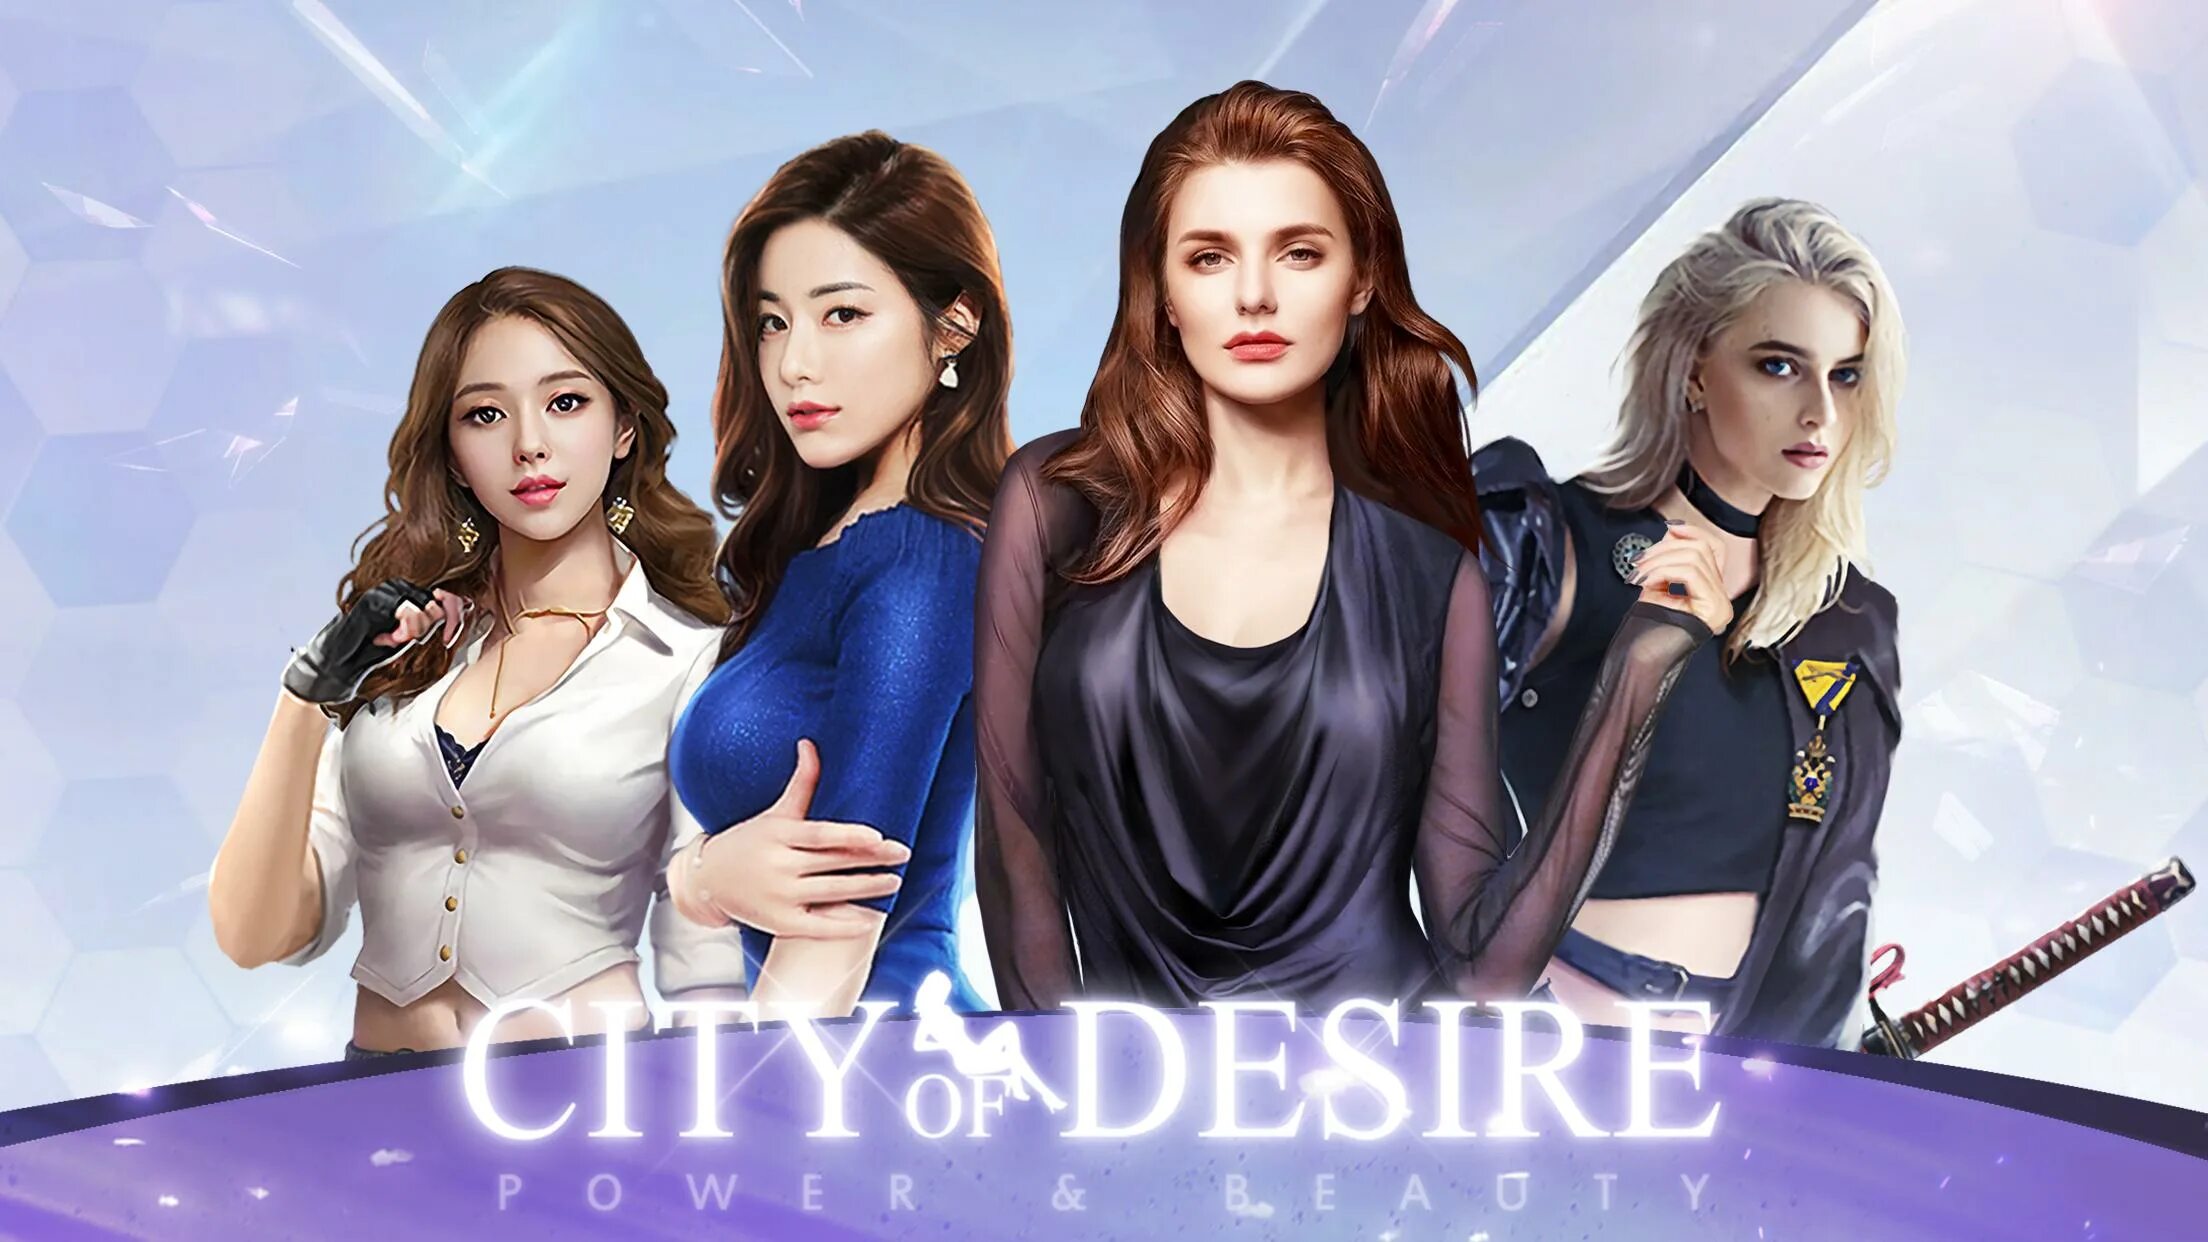 Legend city игра. Desire игра. City of Desire. Legend City секретарши. City of Desire (h365).